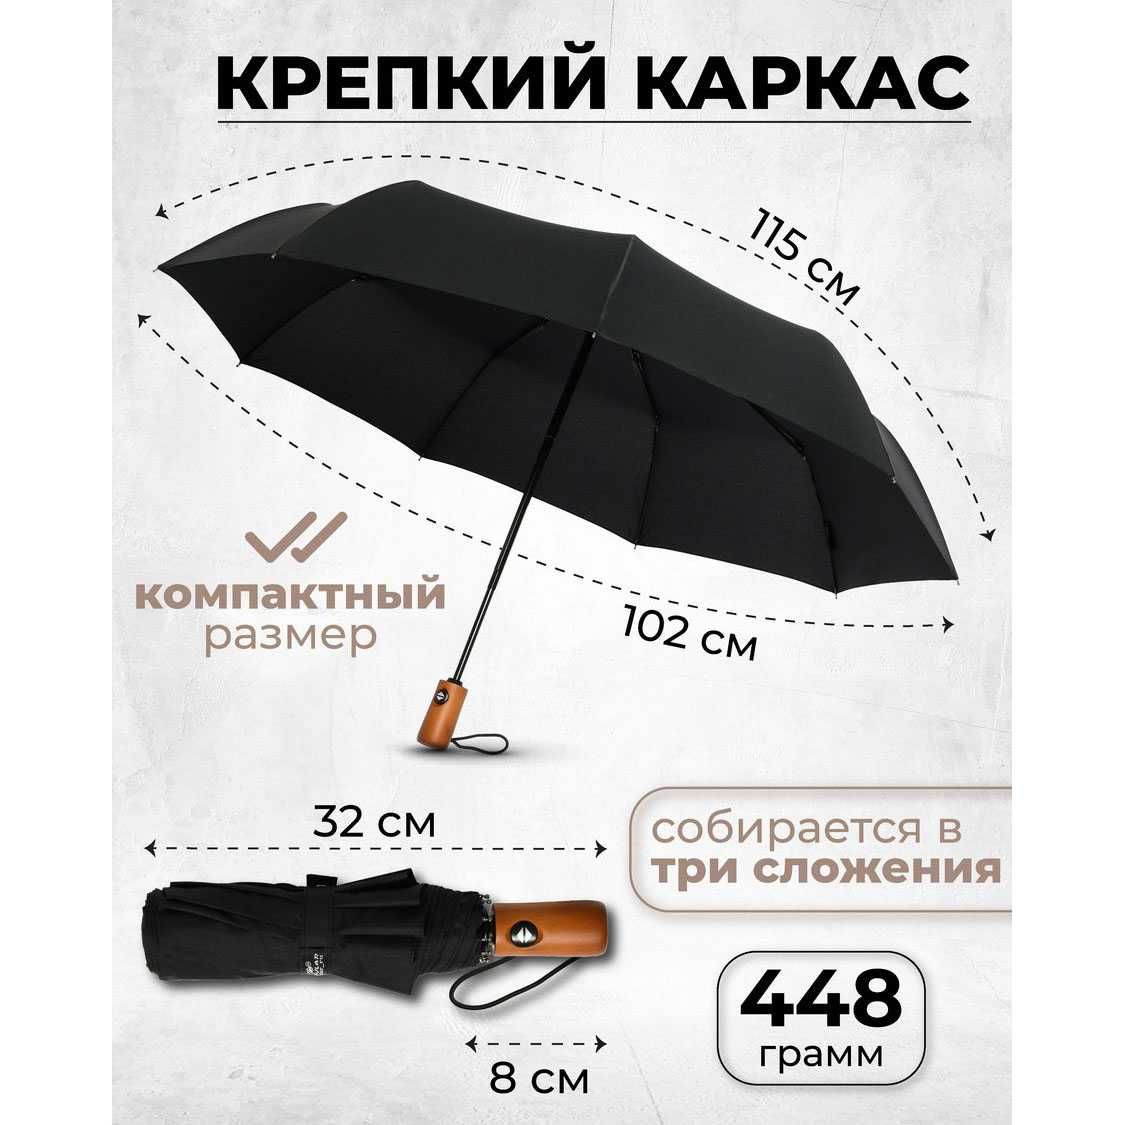 Зонтик премиум качества - Автоматический, мужской, укреплённый.